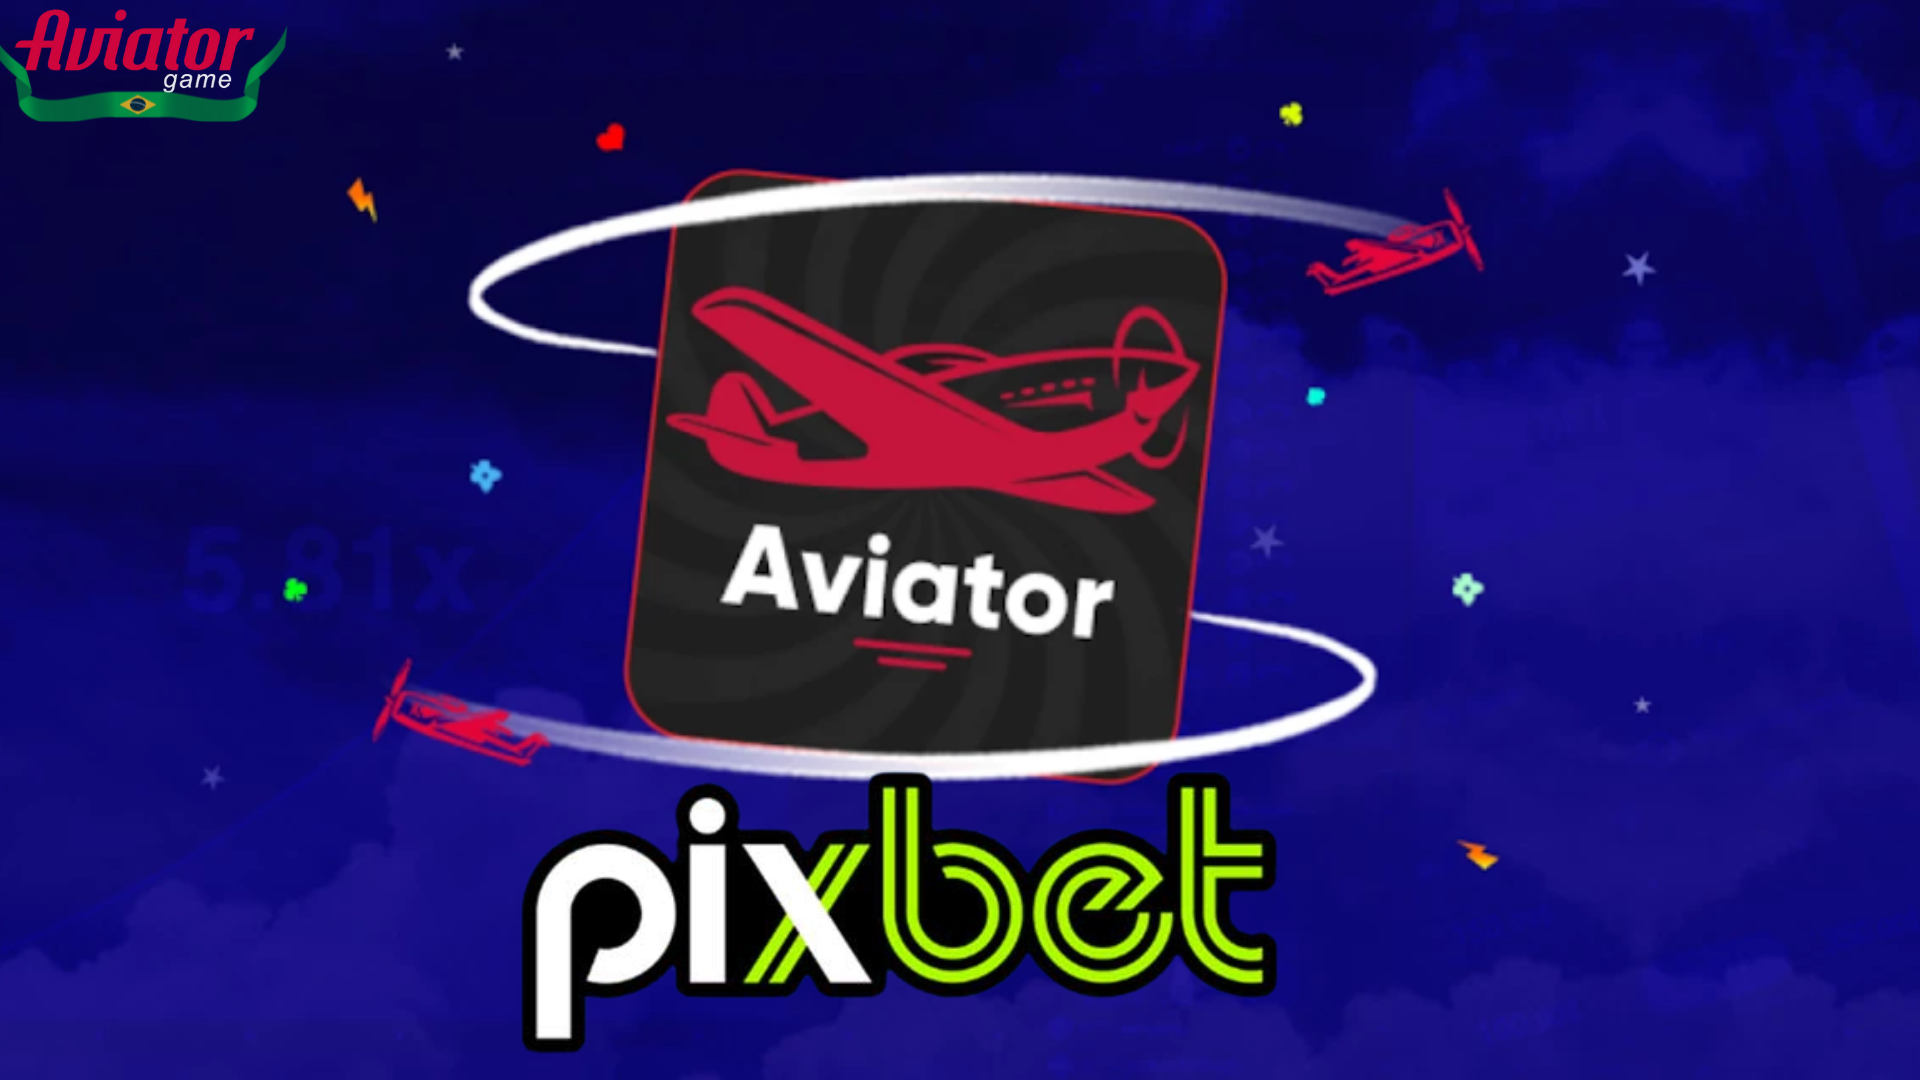 Pixbet Aviator: O jogo de apostas que não para de crescer!